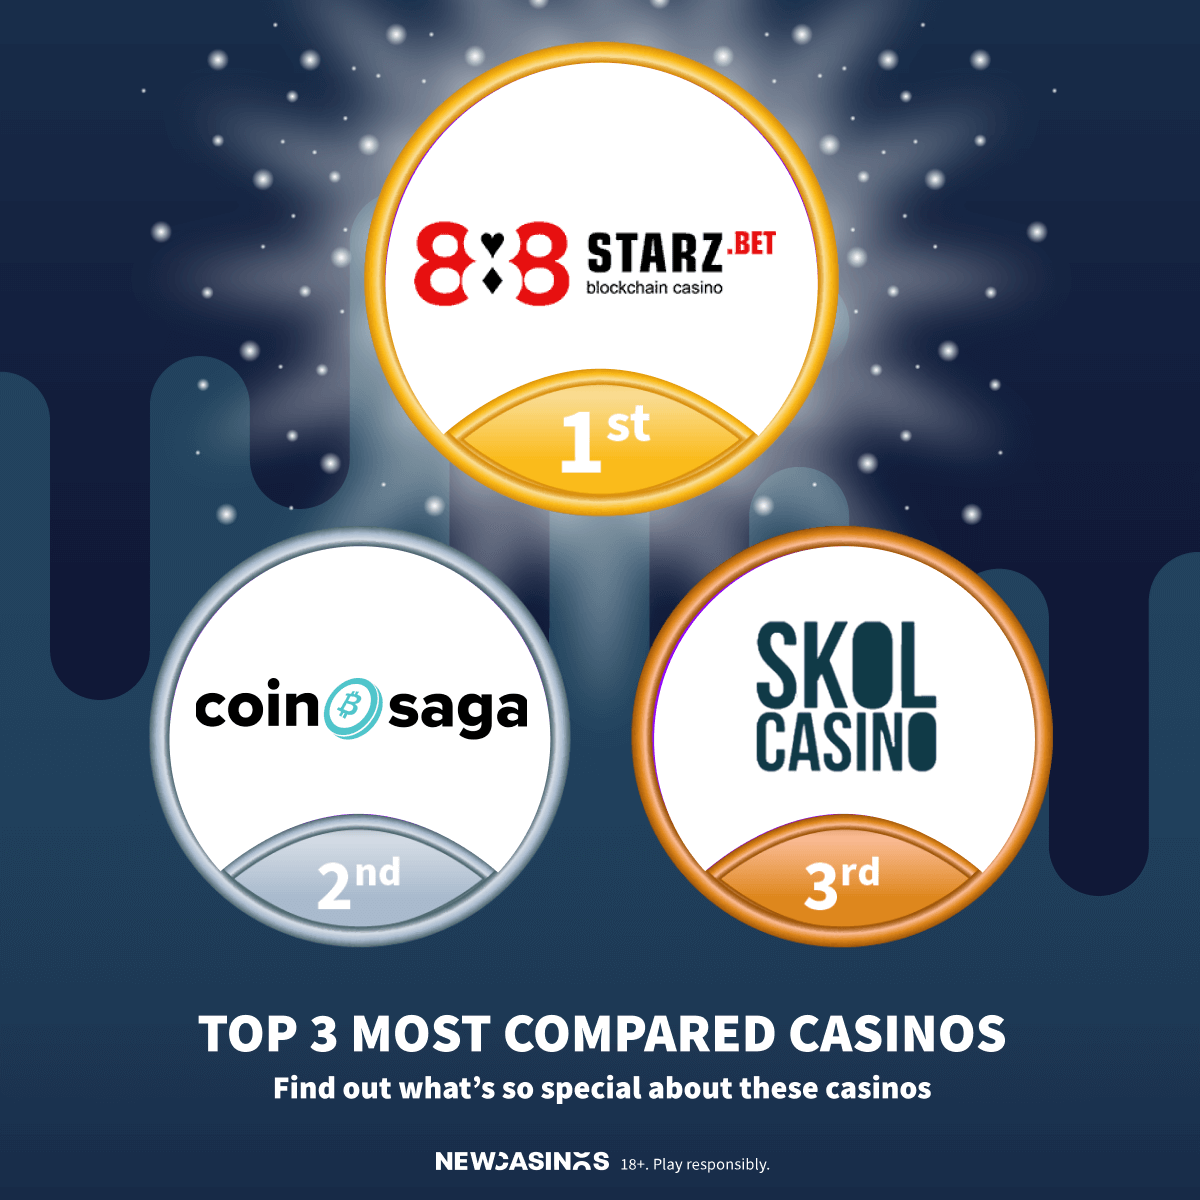 https://www.newcasinos.com/compare-casinos/